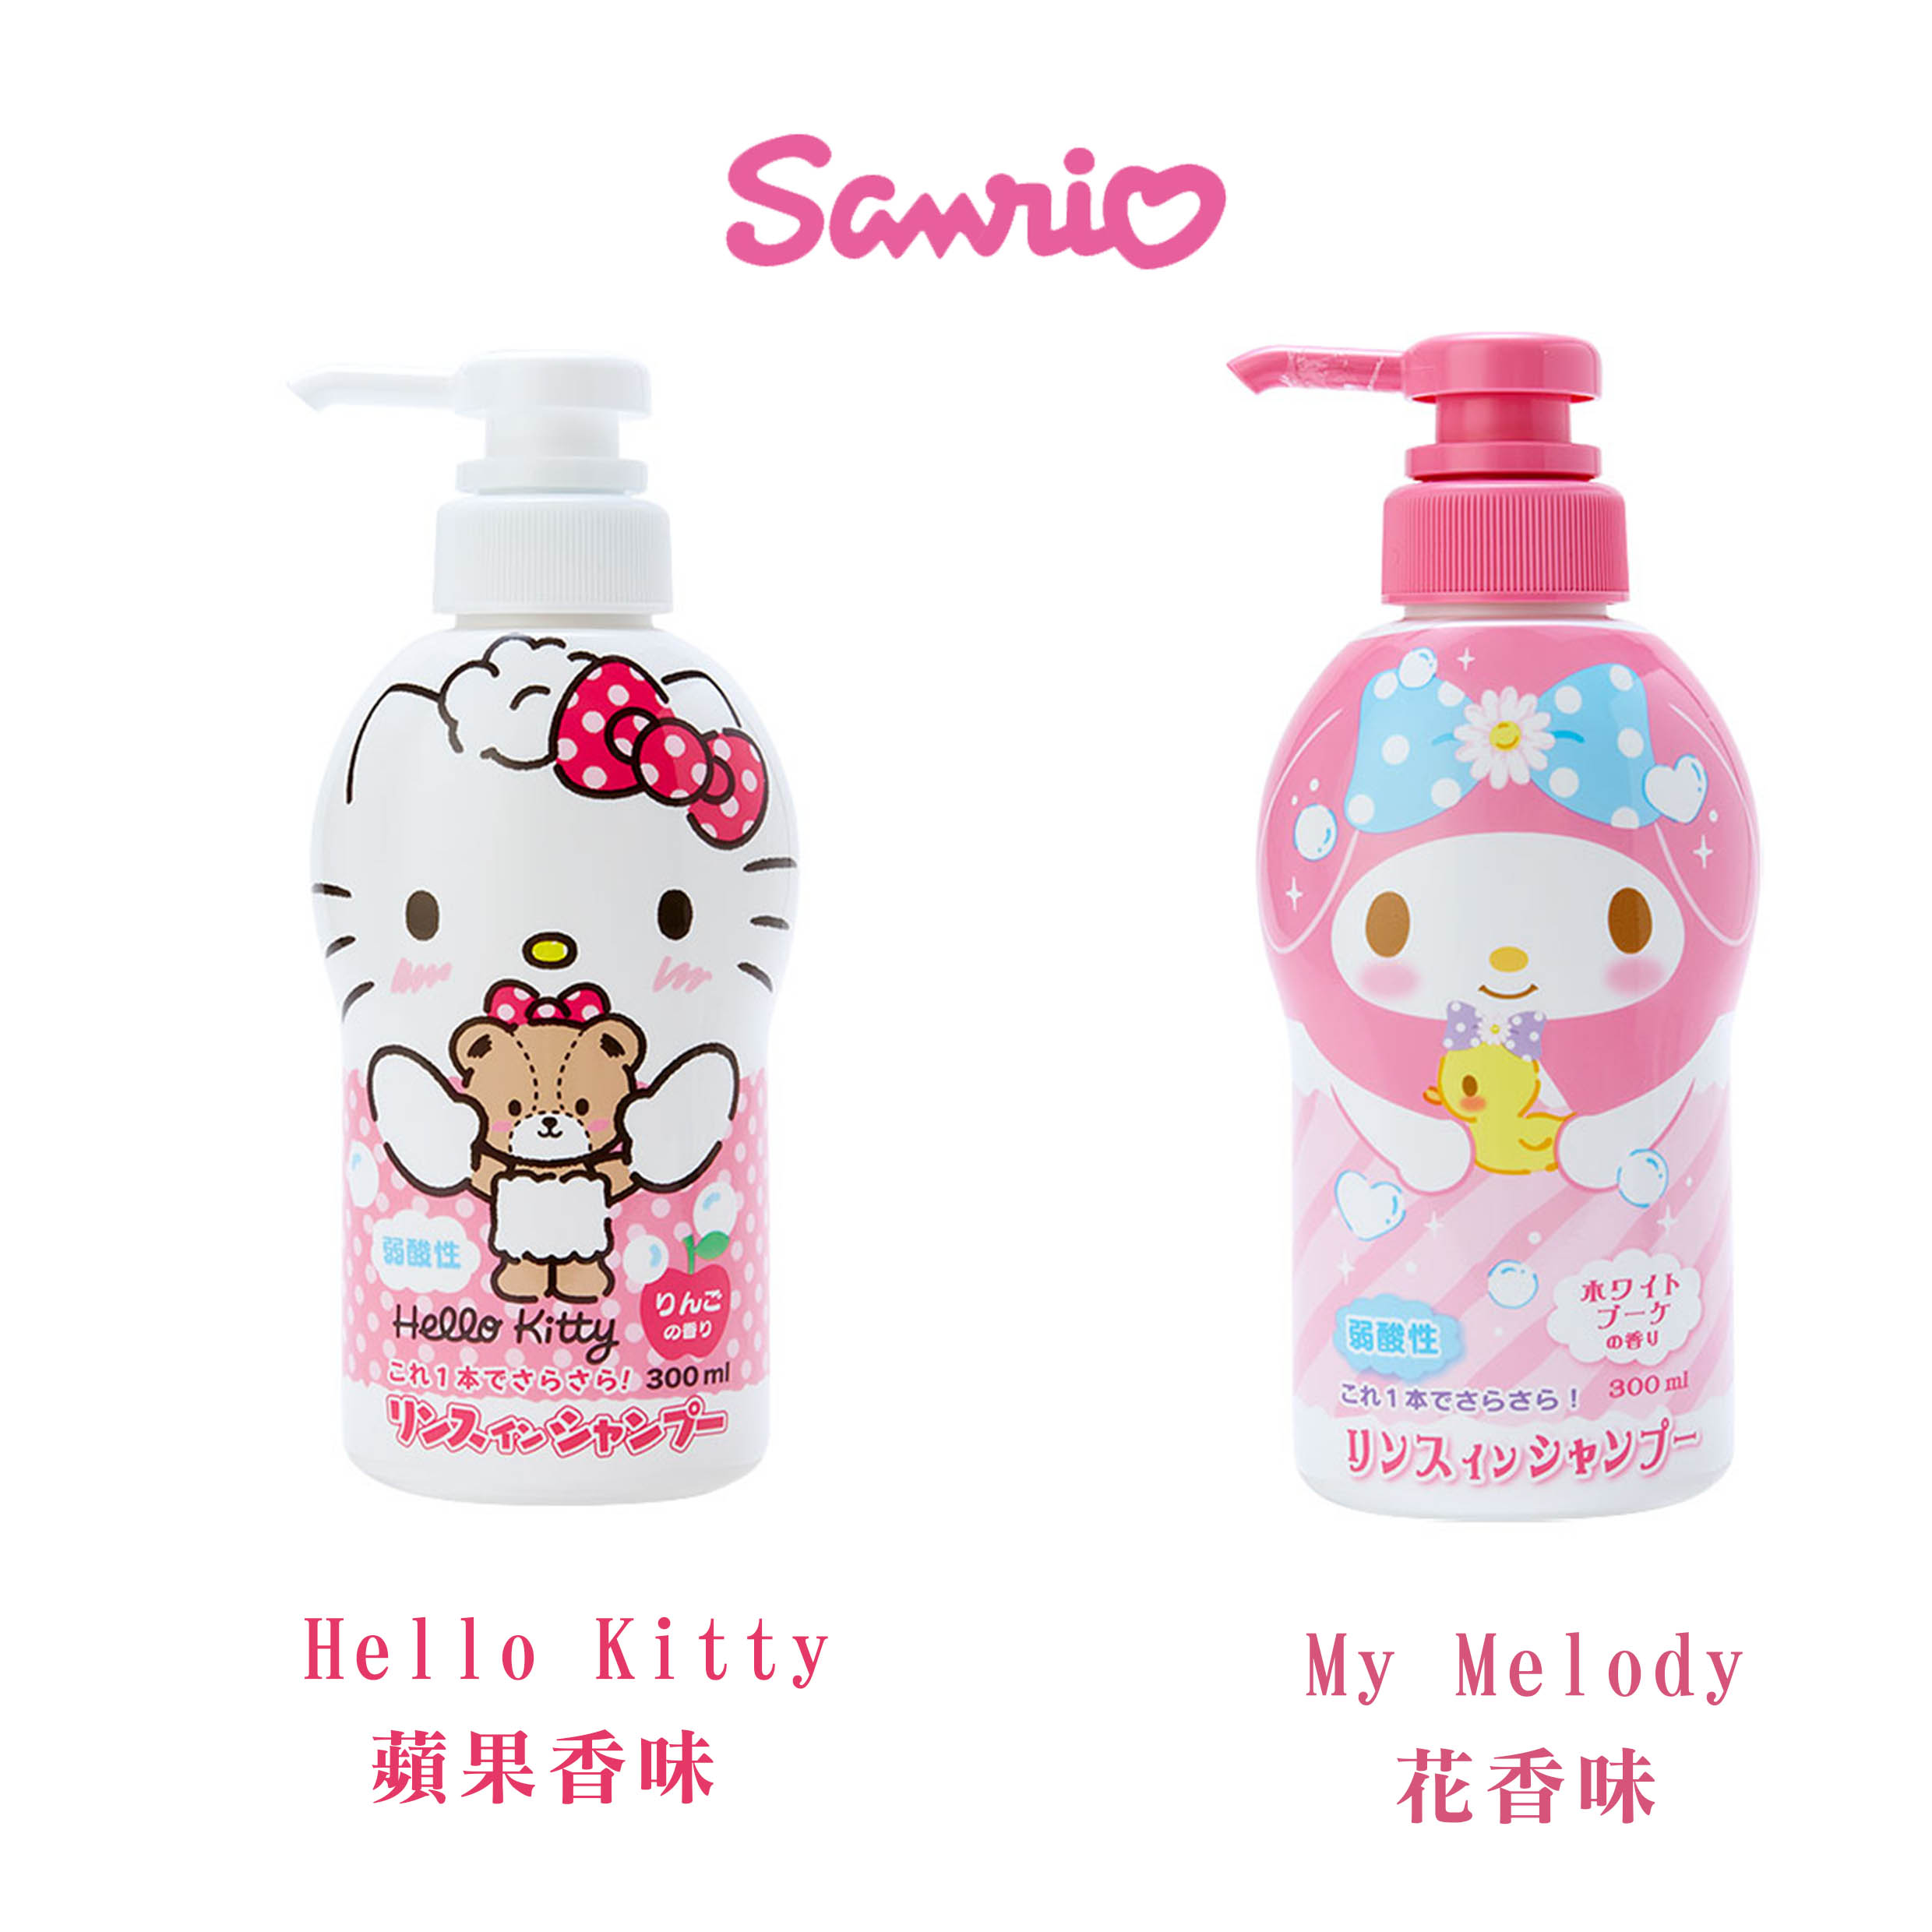 洗髮精 300ml-三麗鷗 Sanrio 日本進口正版授權